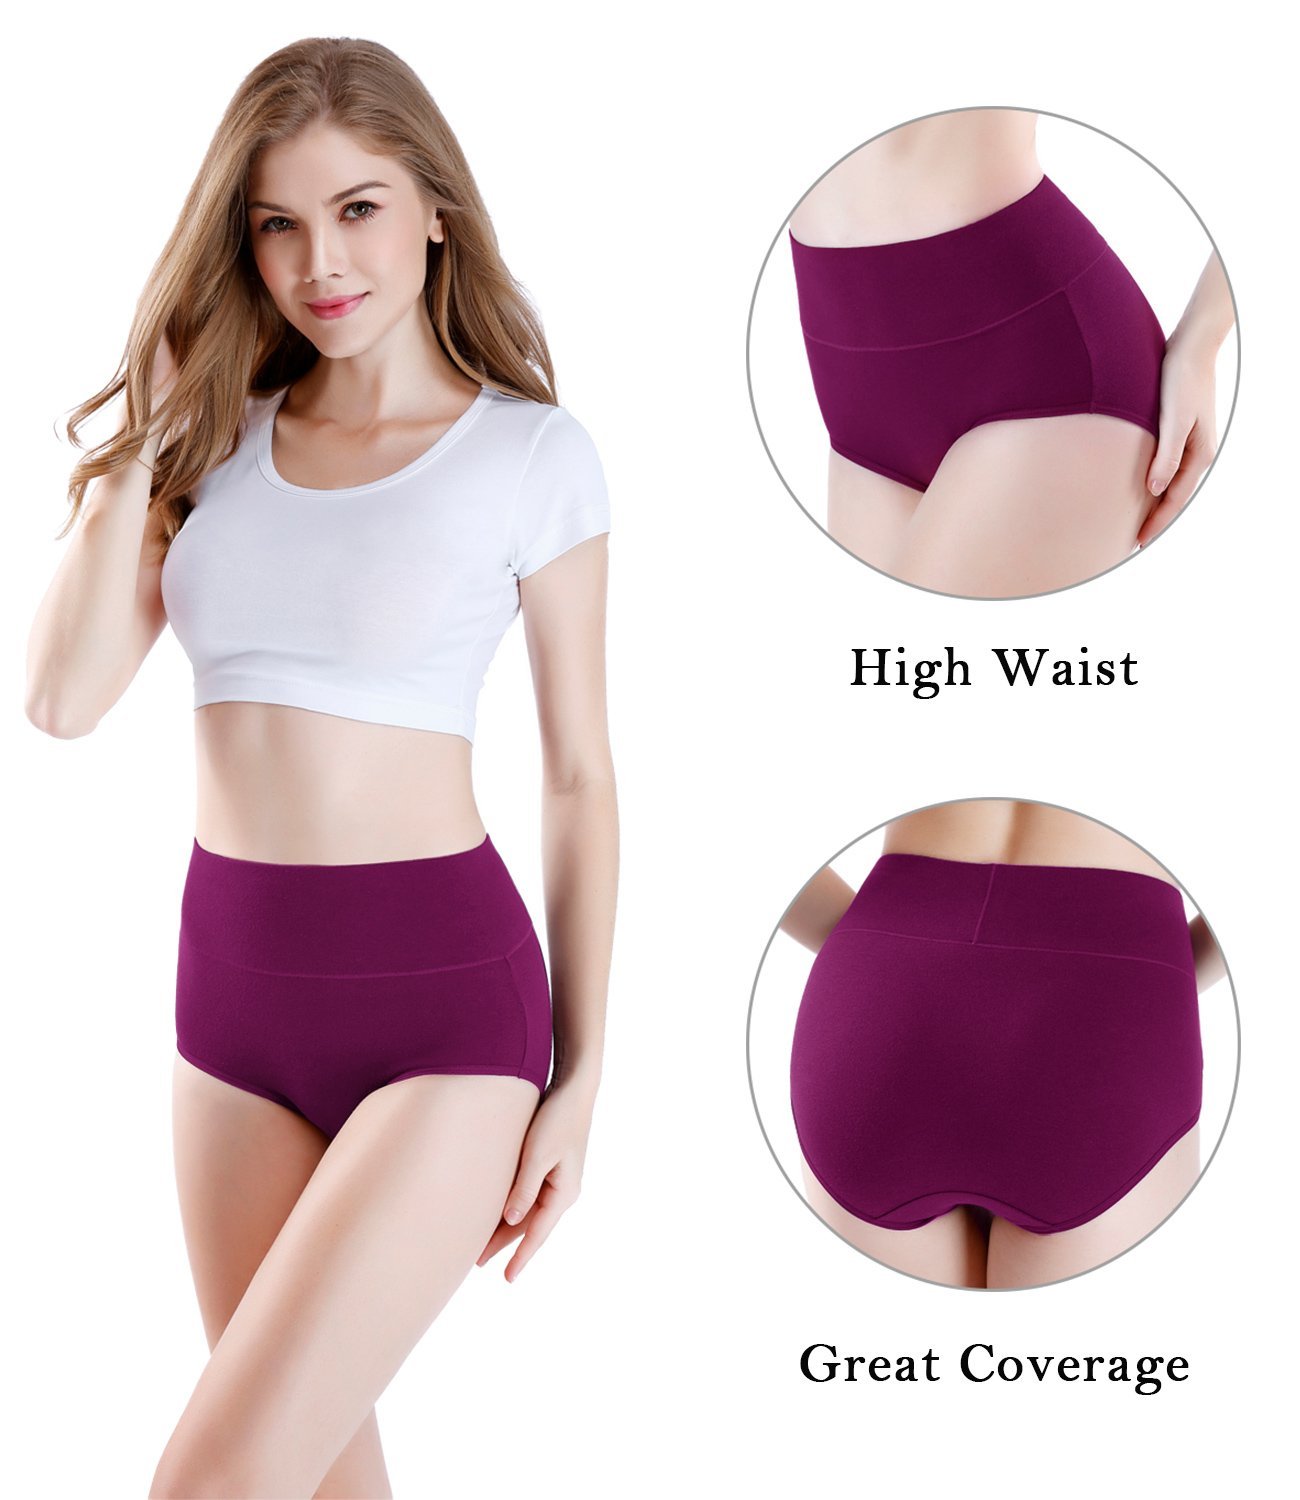 wirarpa Womens Cotton Underwear 4 Pack High Waist Briefs Light